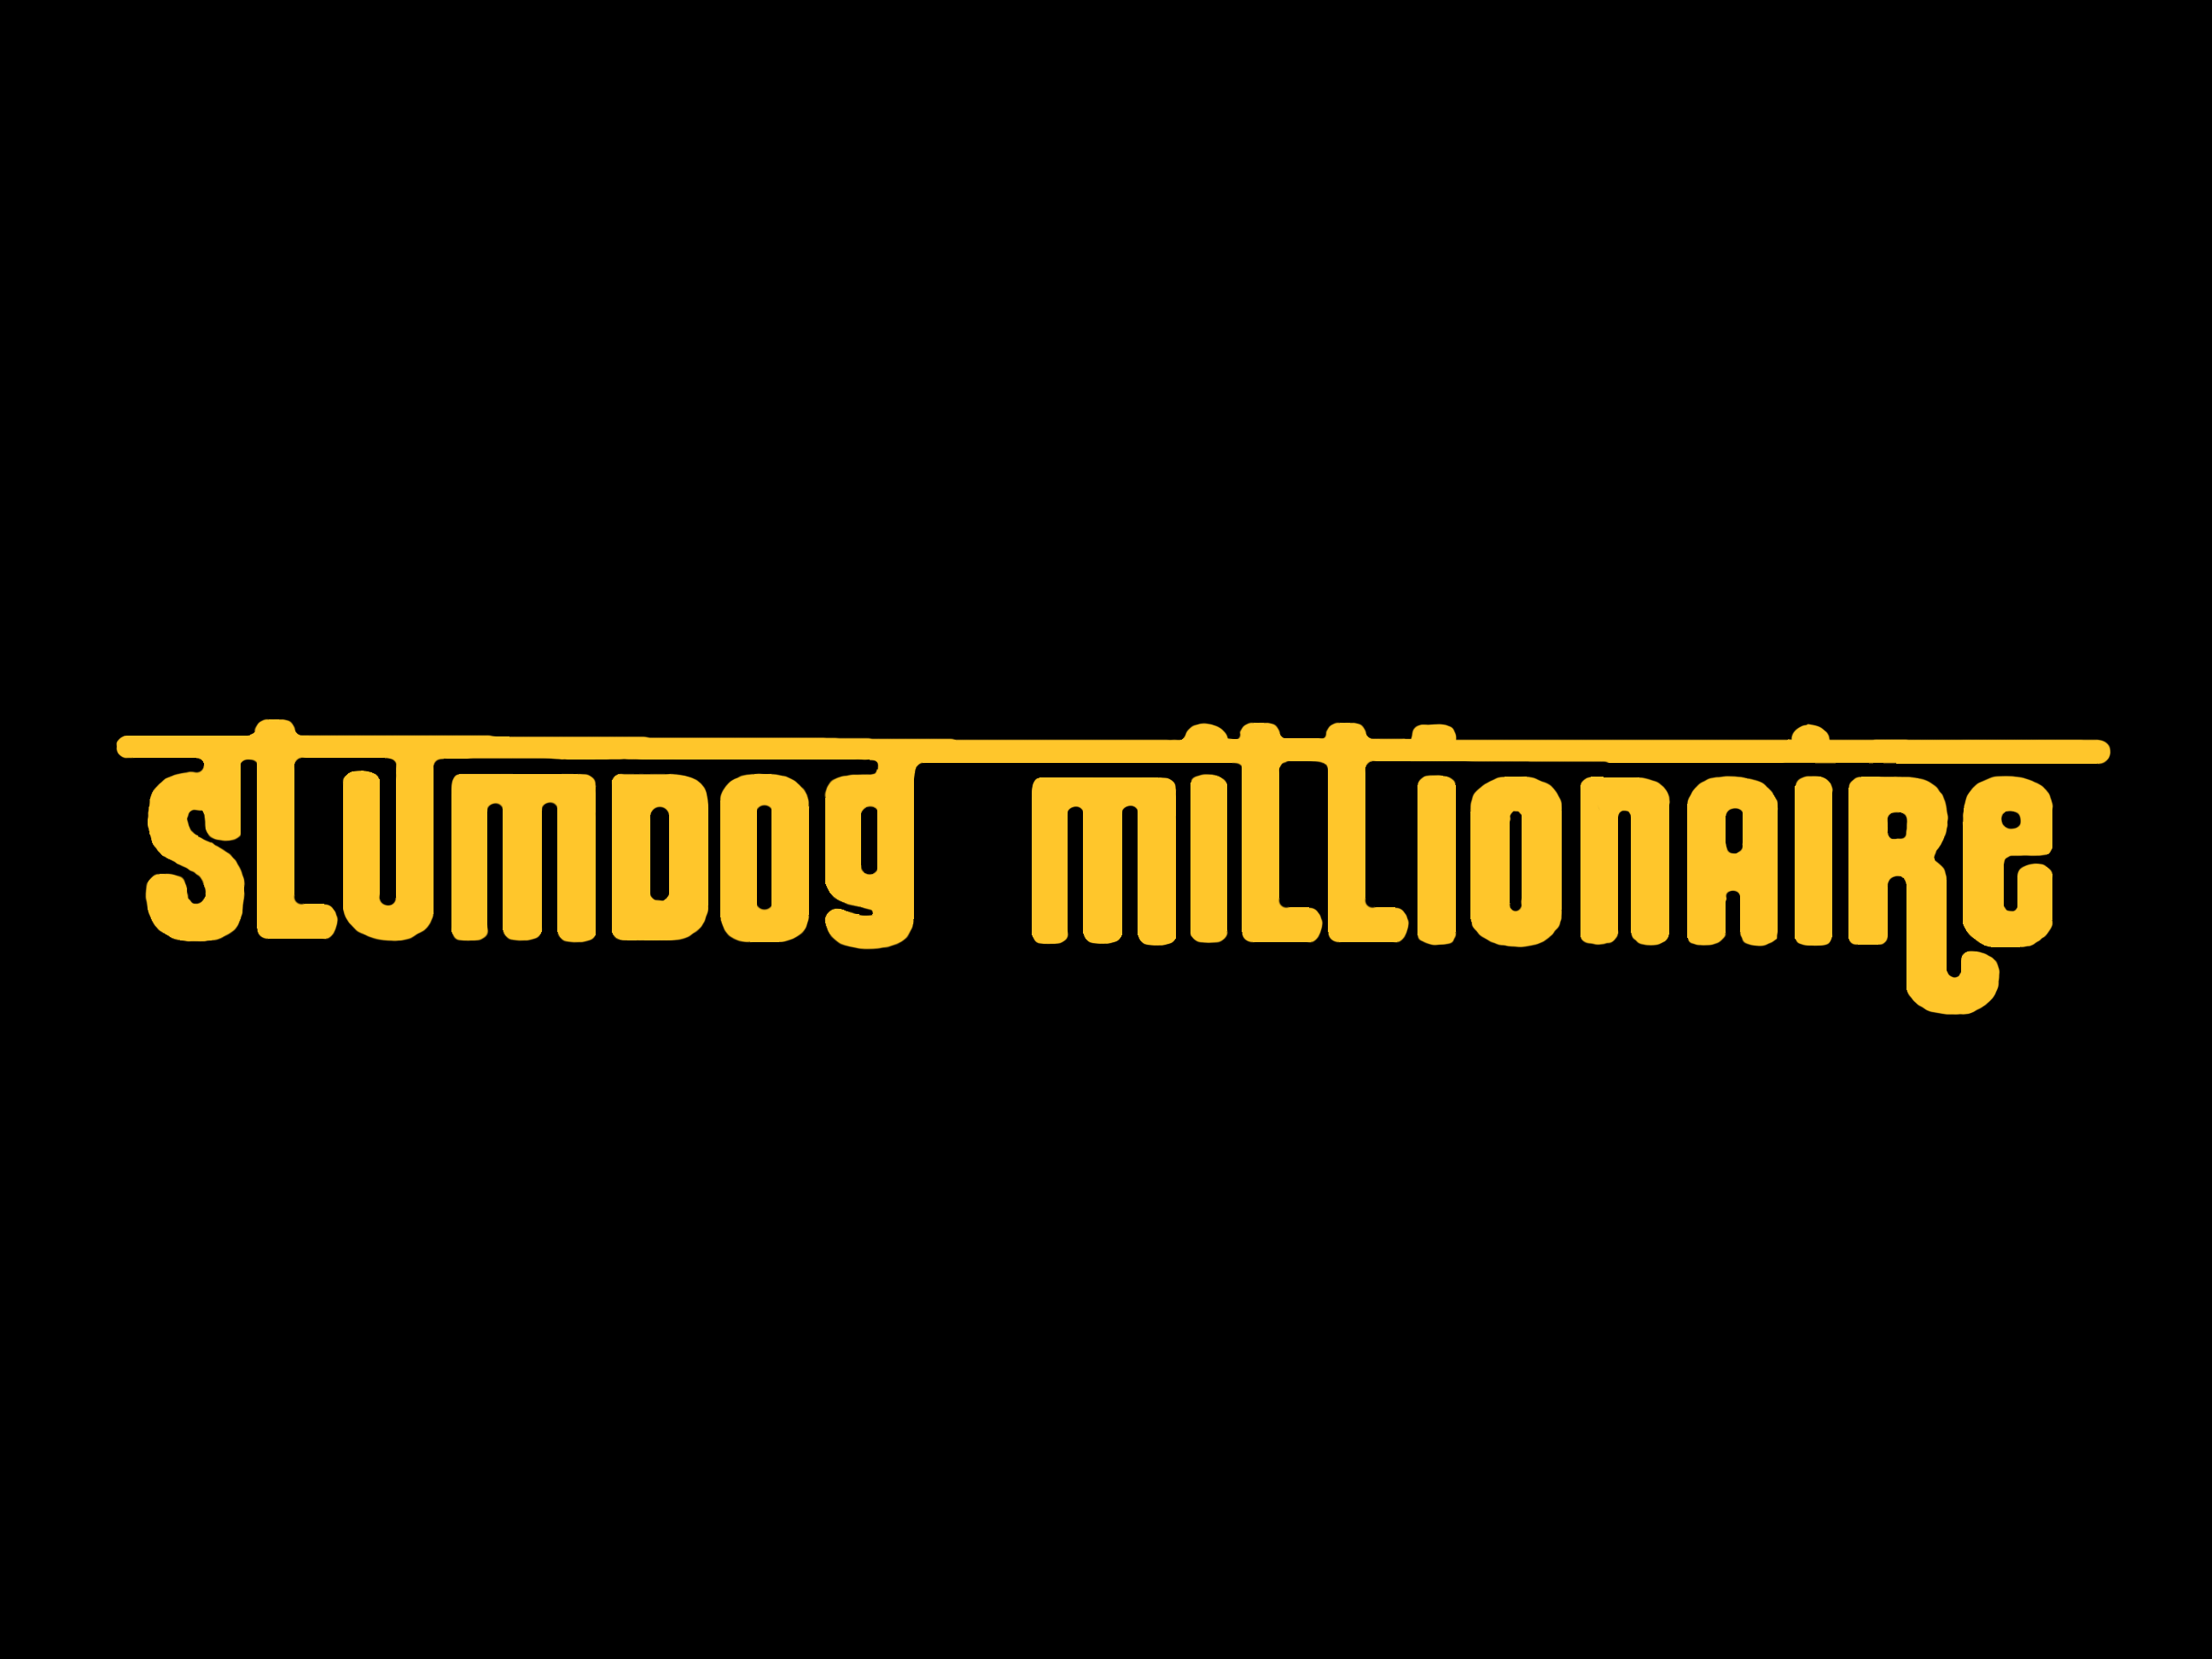 Slumdog Millionaire 2K Wallpapers